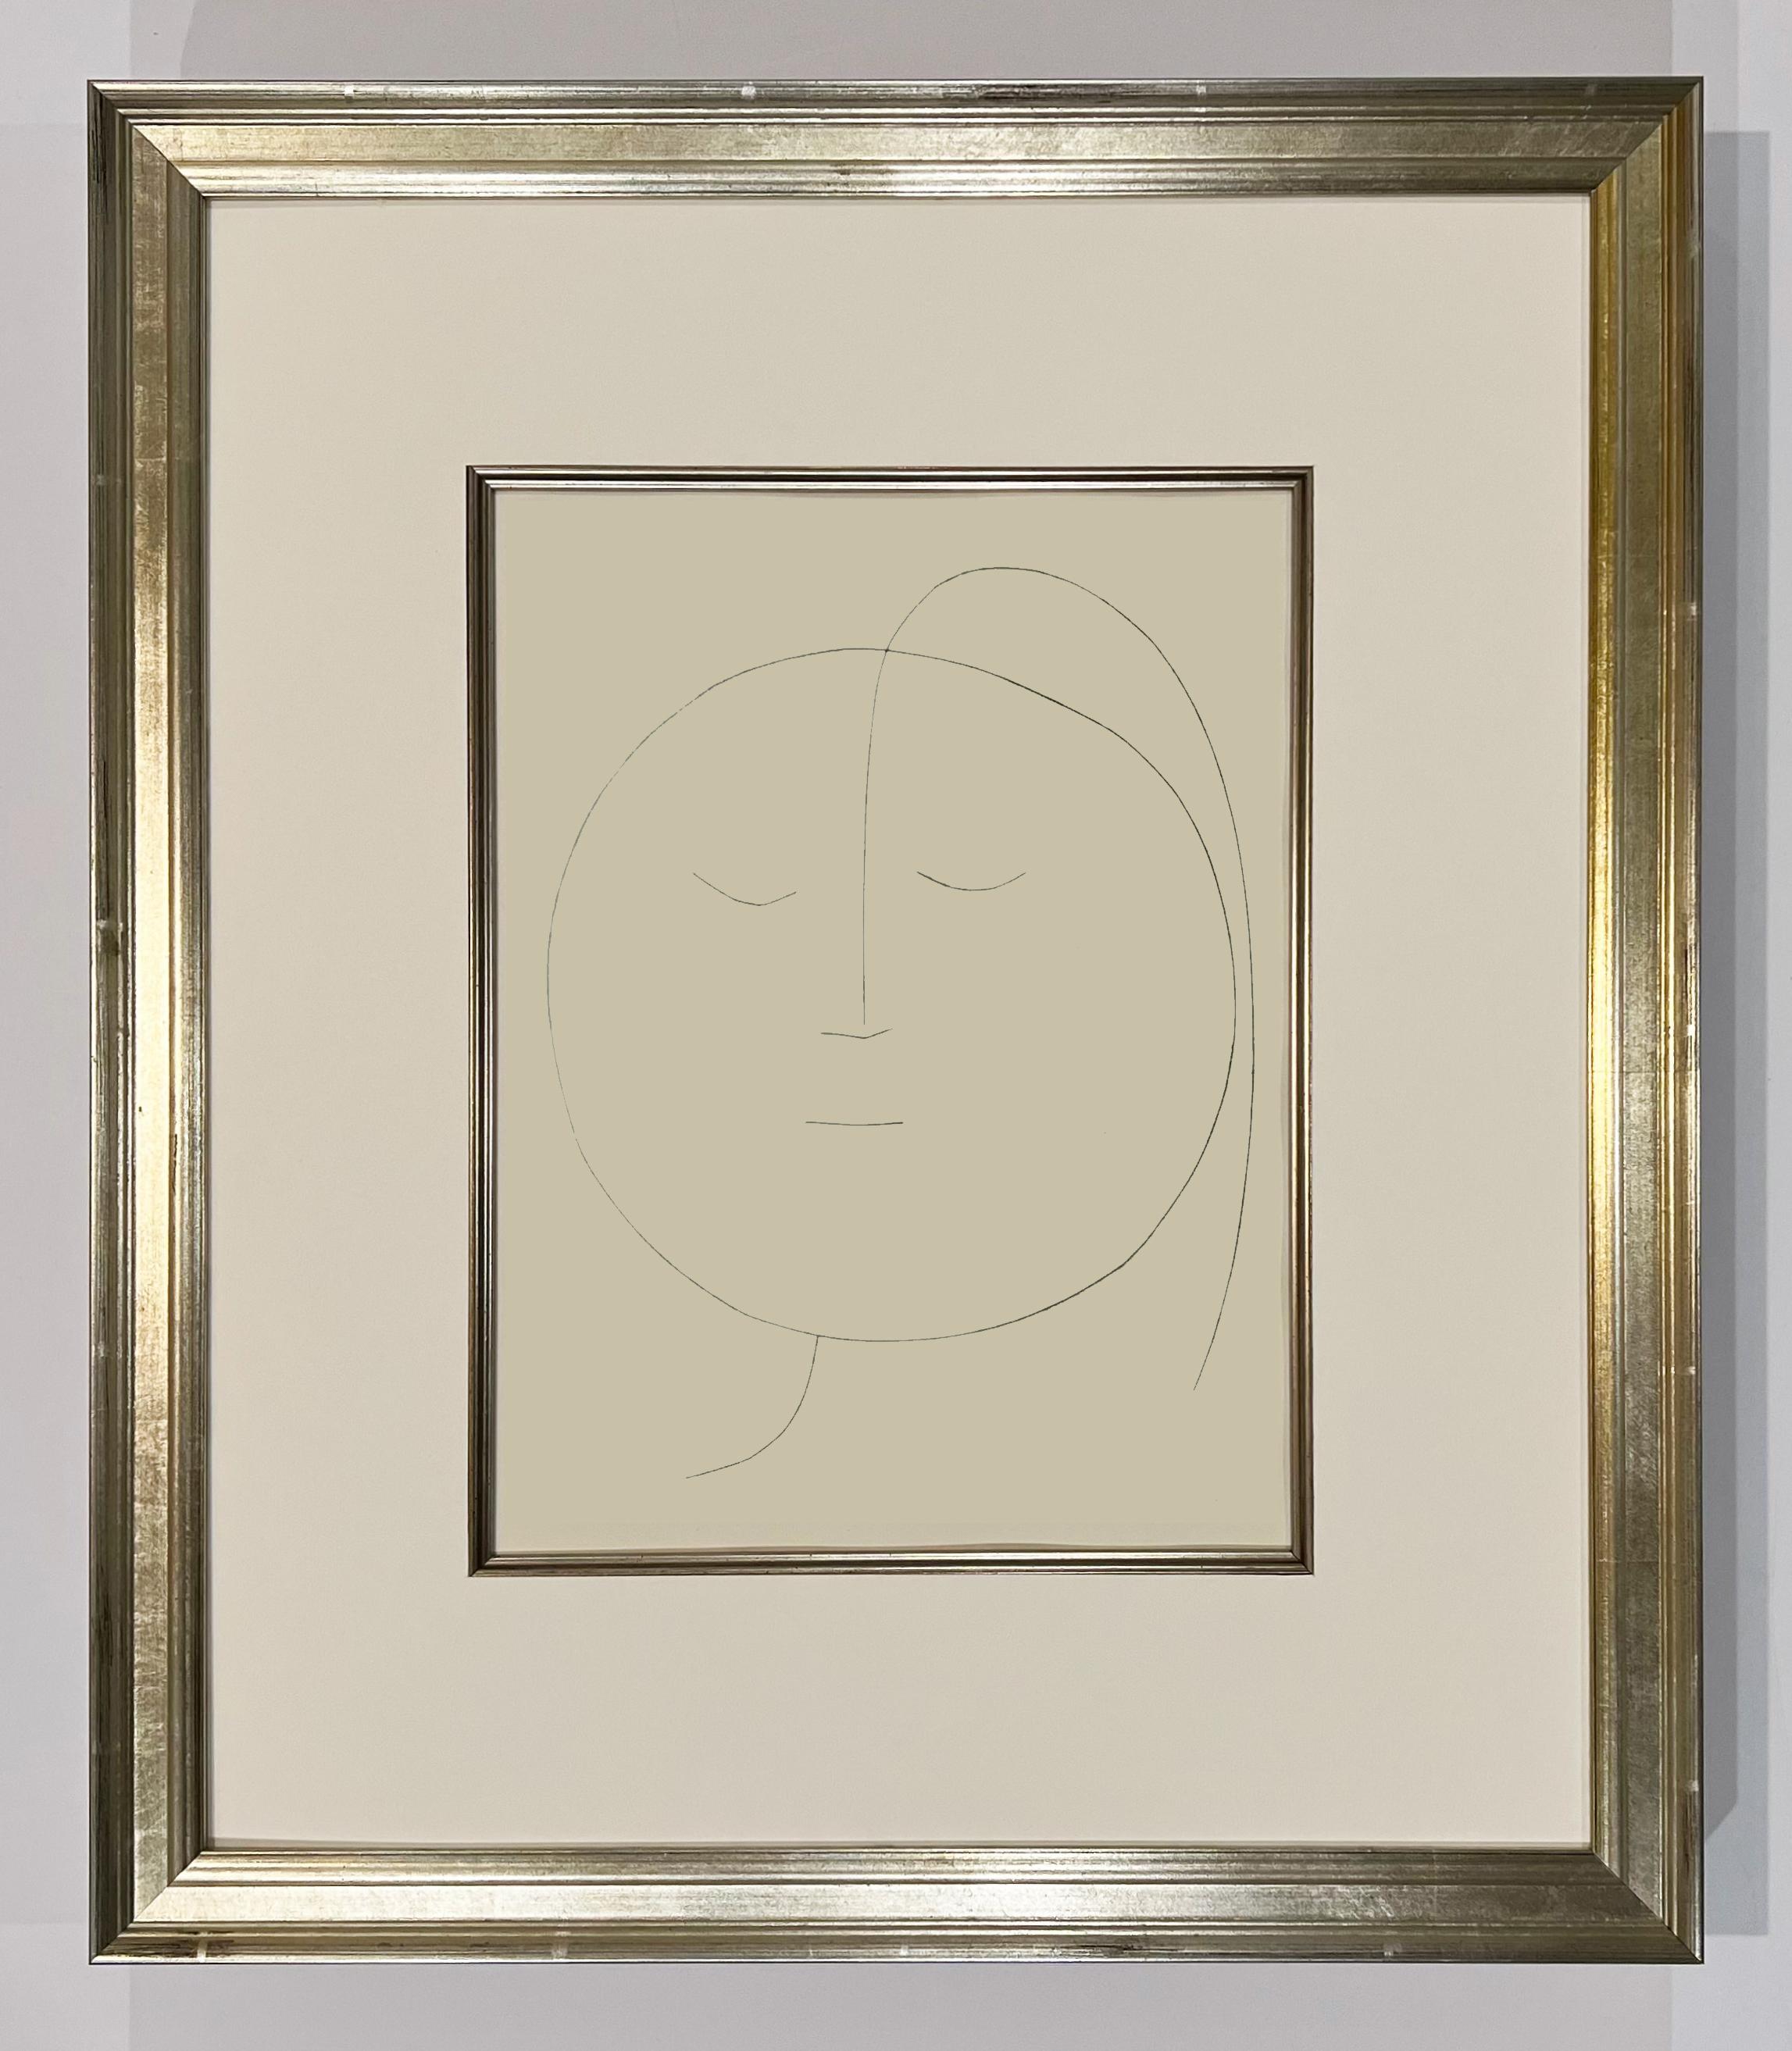 Runder Kopf einer Frau mit Haar (Teller XVIII), von Carmen – Print von Pablo Picasso